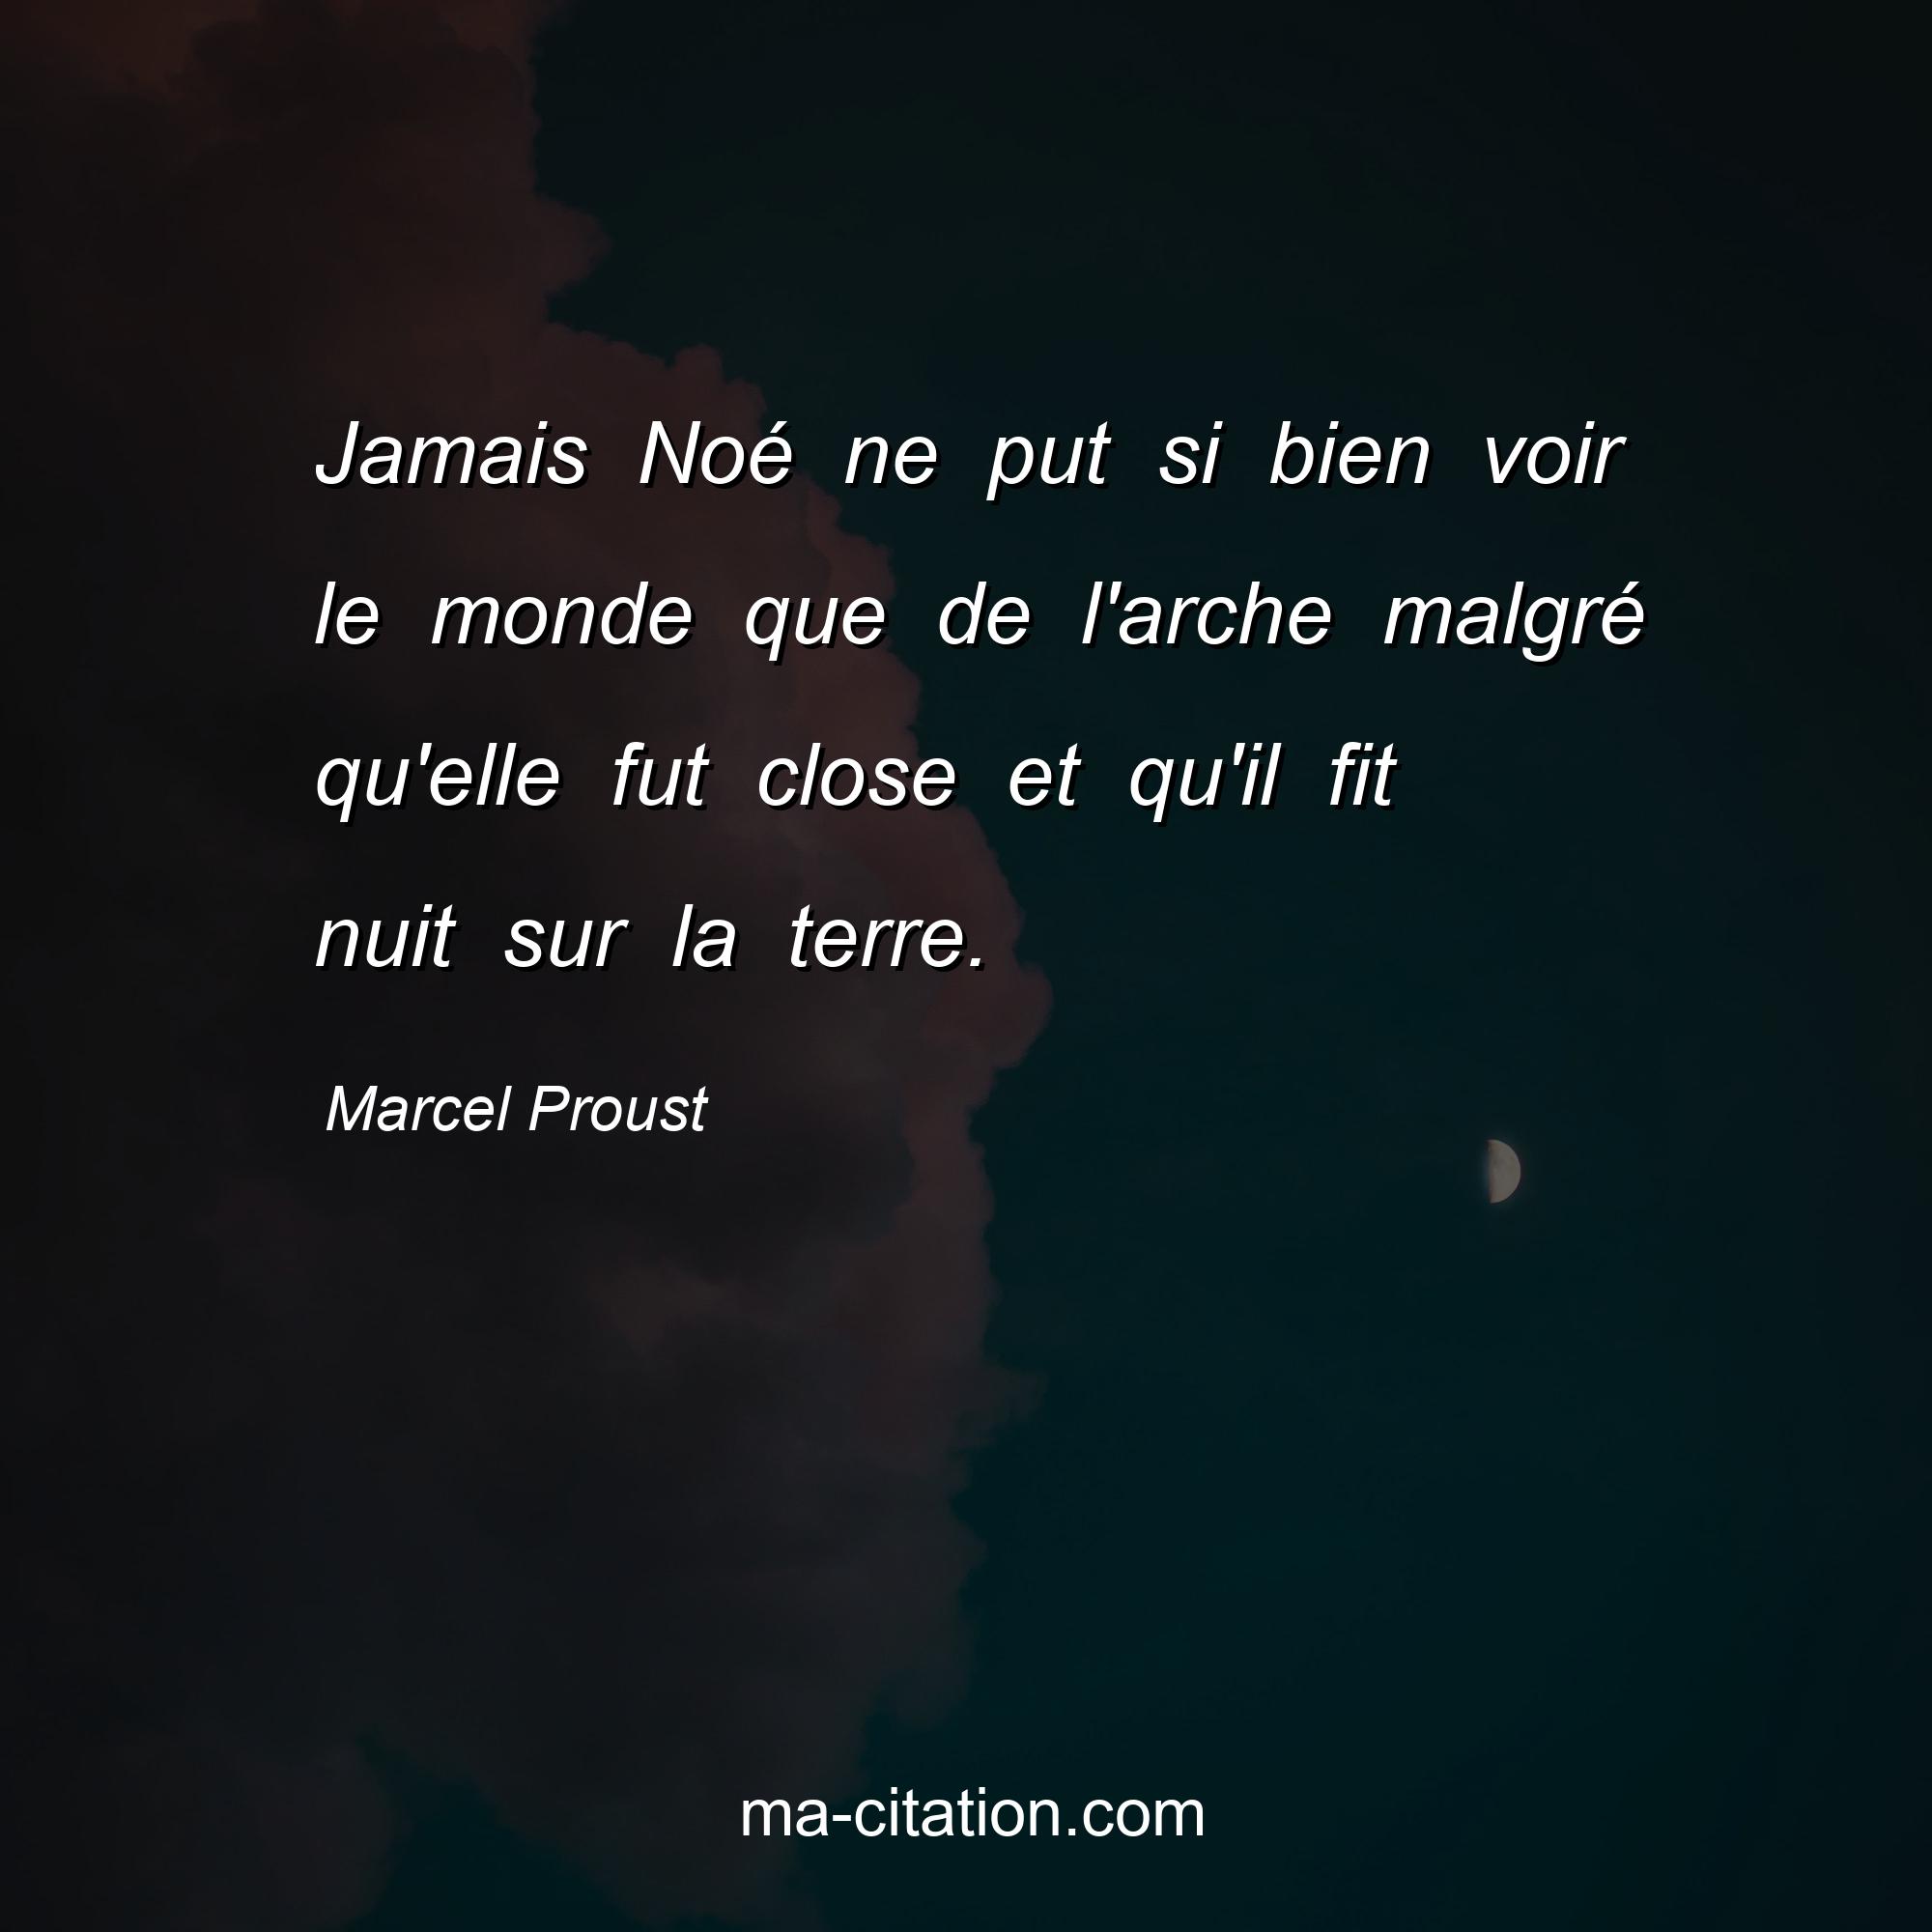 Marcel Proust : Jamais Noé ne put si bien voir le monde que de l'arche malgré qu'elle fut close et qu'il fit nuit sur la terre.